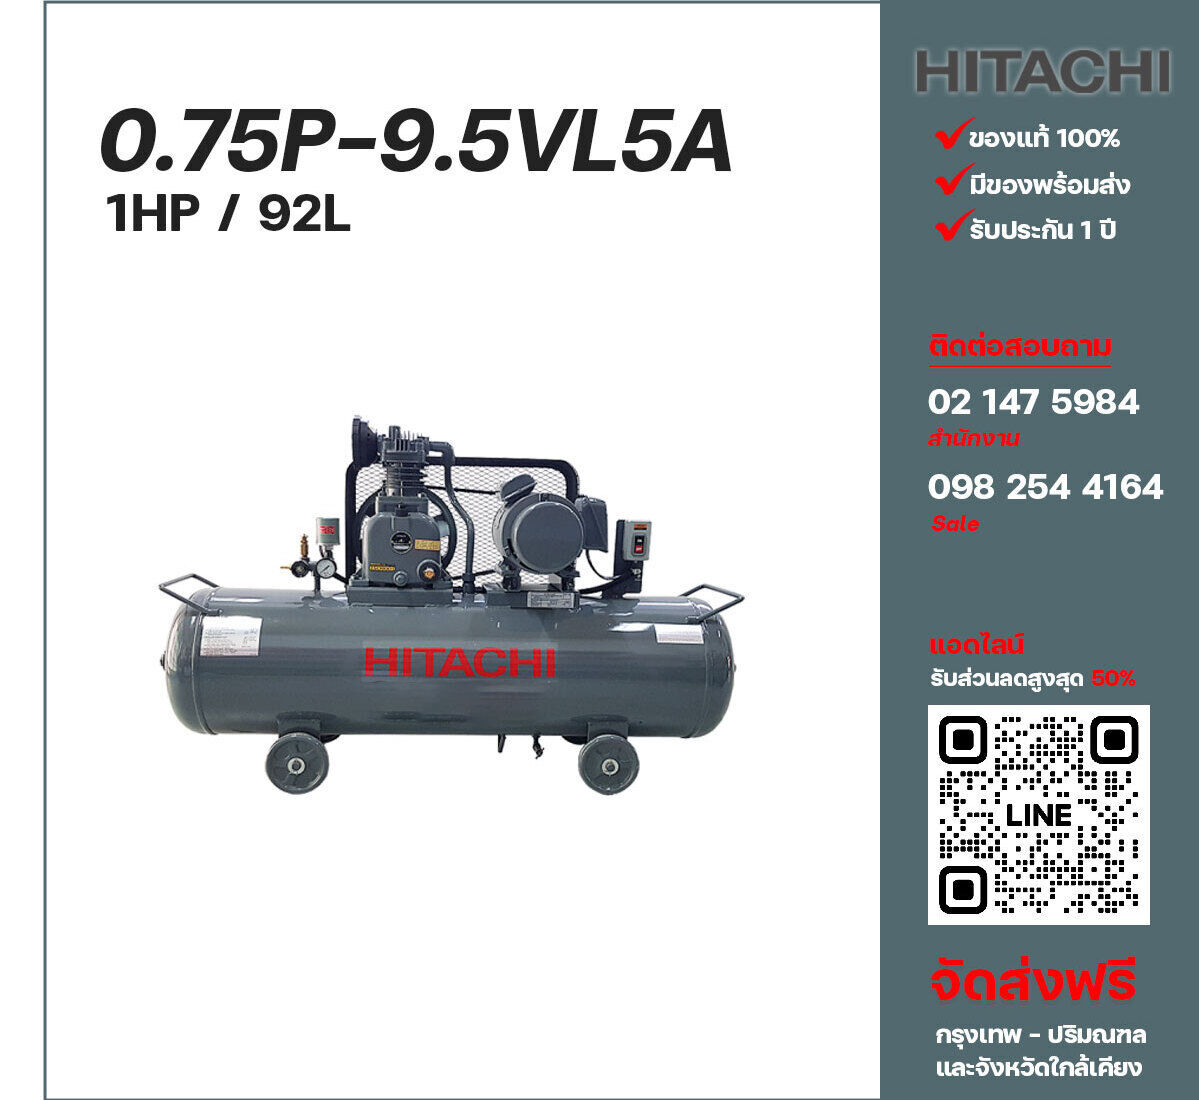 ปั๊มลมฮิตาชิ HITACHI รุ่นใช้น้ำมัน 0.75P-9.5VL5A380V ปั๊มลมลูกสูบ ขนาด 1 สูบ 1 แรงม้า 92 ลิตร Hitachi พร้อมมอเตอร์ Hitachi ไฟ 380V ส่งฟรี กรุงเทพฯ-ปริมณฑล รับประกัน 1 ปี